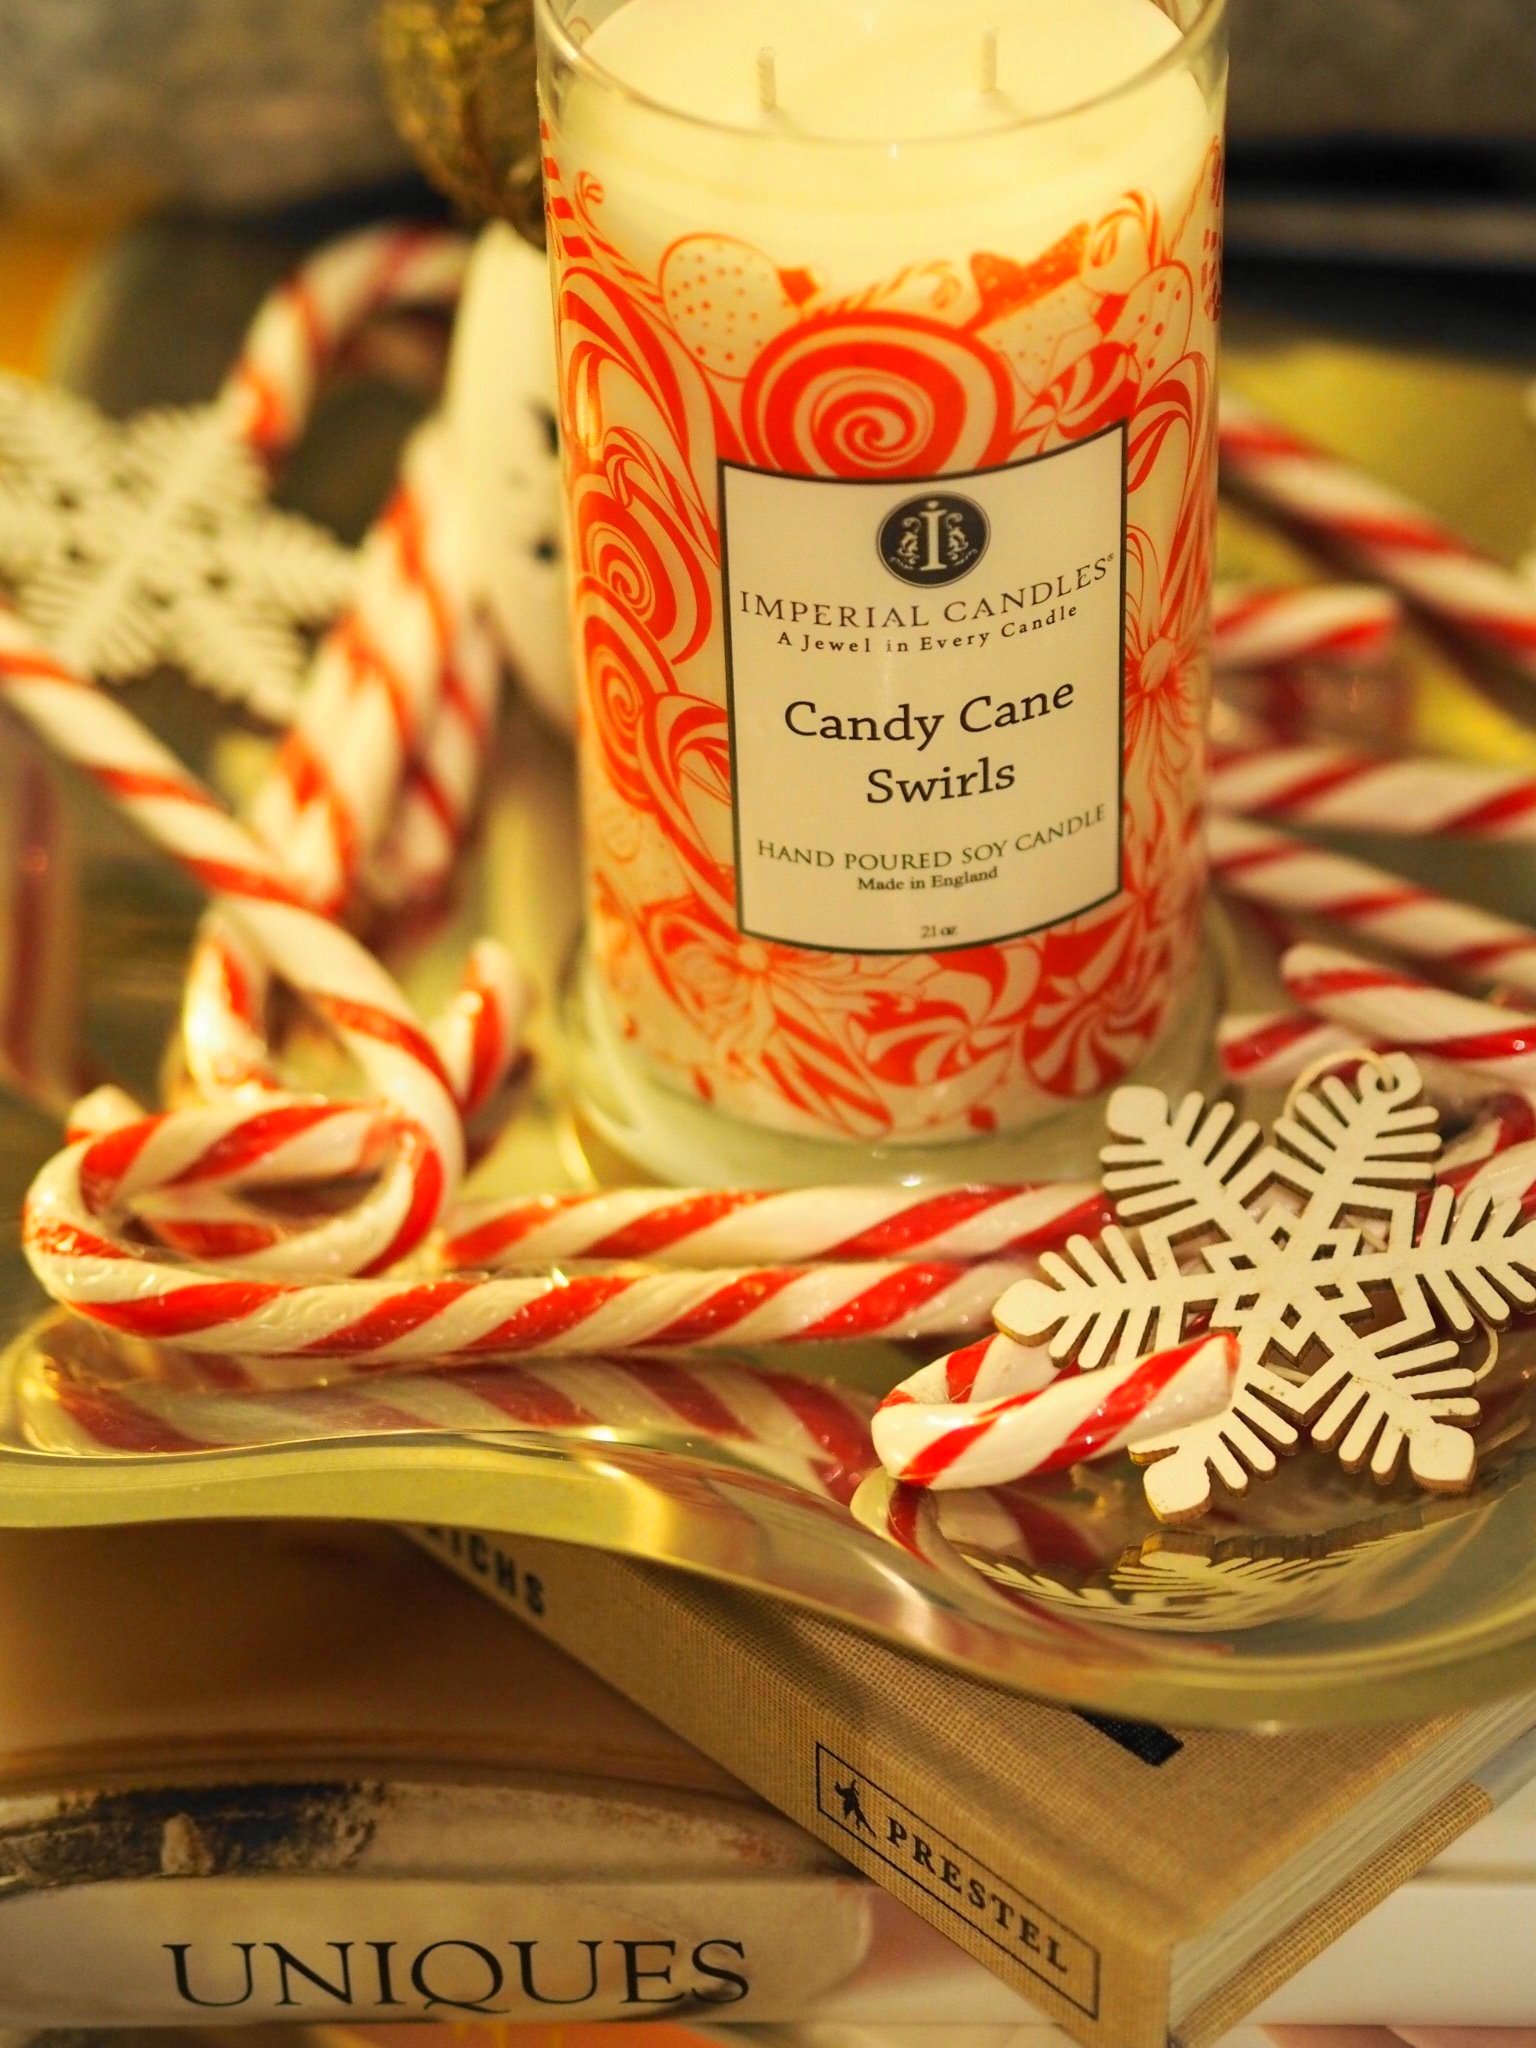 Heute zeige ich euch auf meinem Blog eine wunderschöne Duftkerze und kunterbunte weihnachtliche Badebomben mit sehr hübschem Schmuck von Imperial Candles